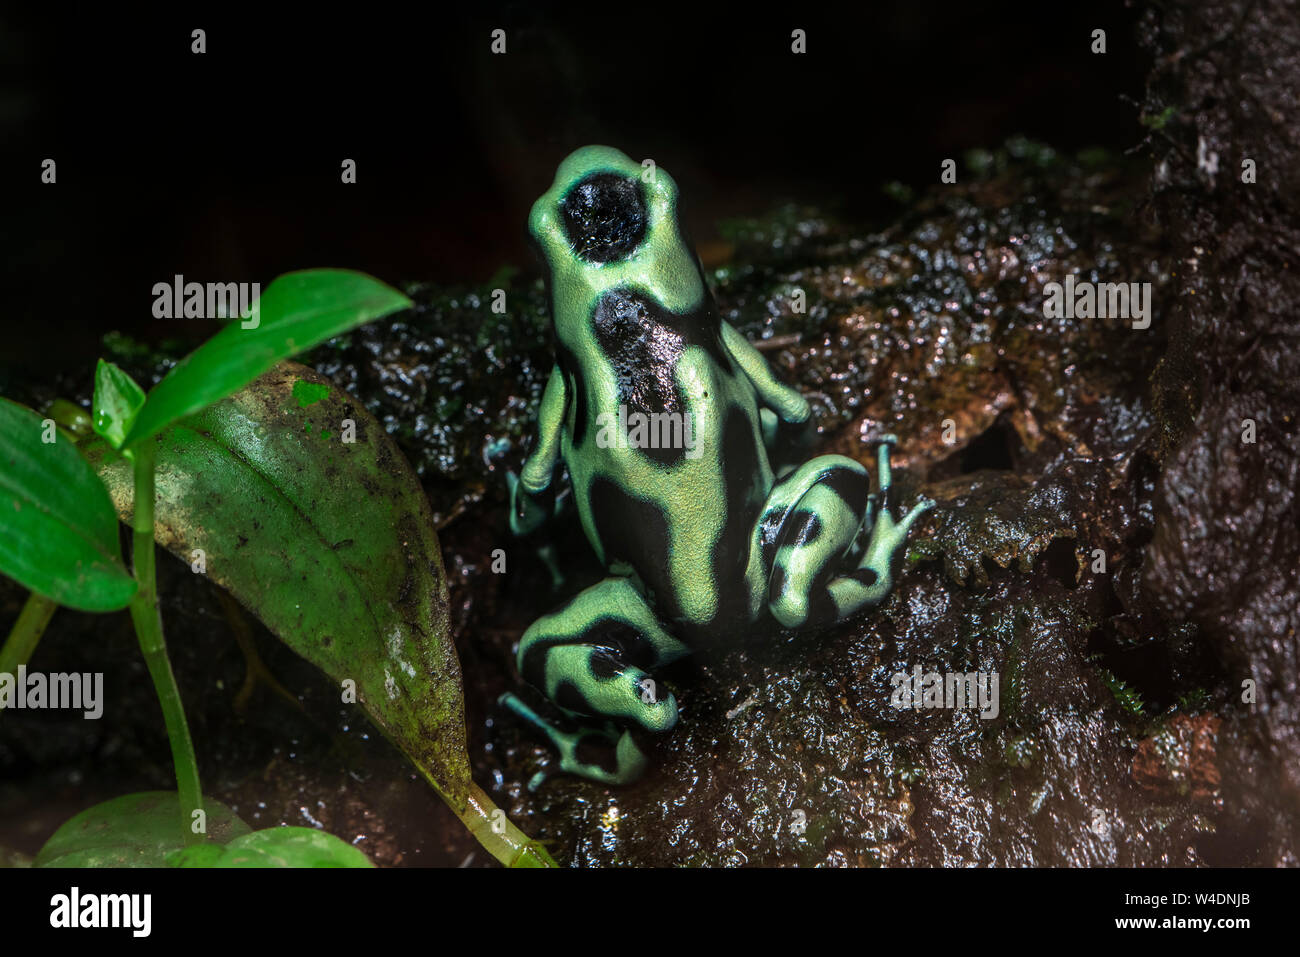 Verde y negro poison dart frog / verde y negro de ranas flecha venenosa (Dendrobates auratus auratus) Phyllobates / nativas de América Central y del Sur Foto de stock